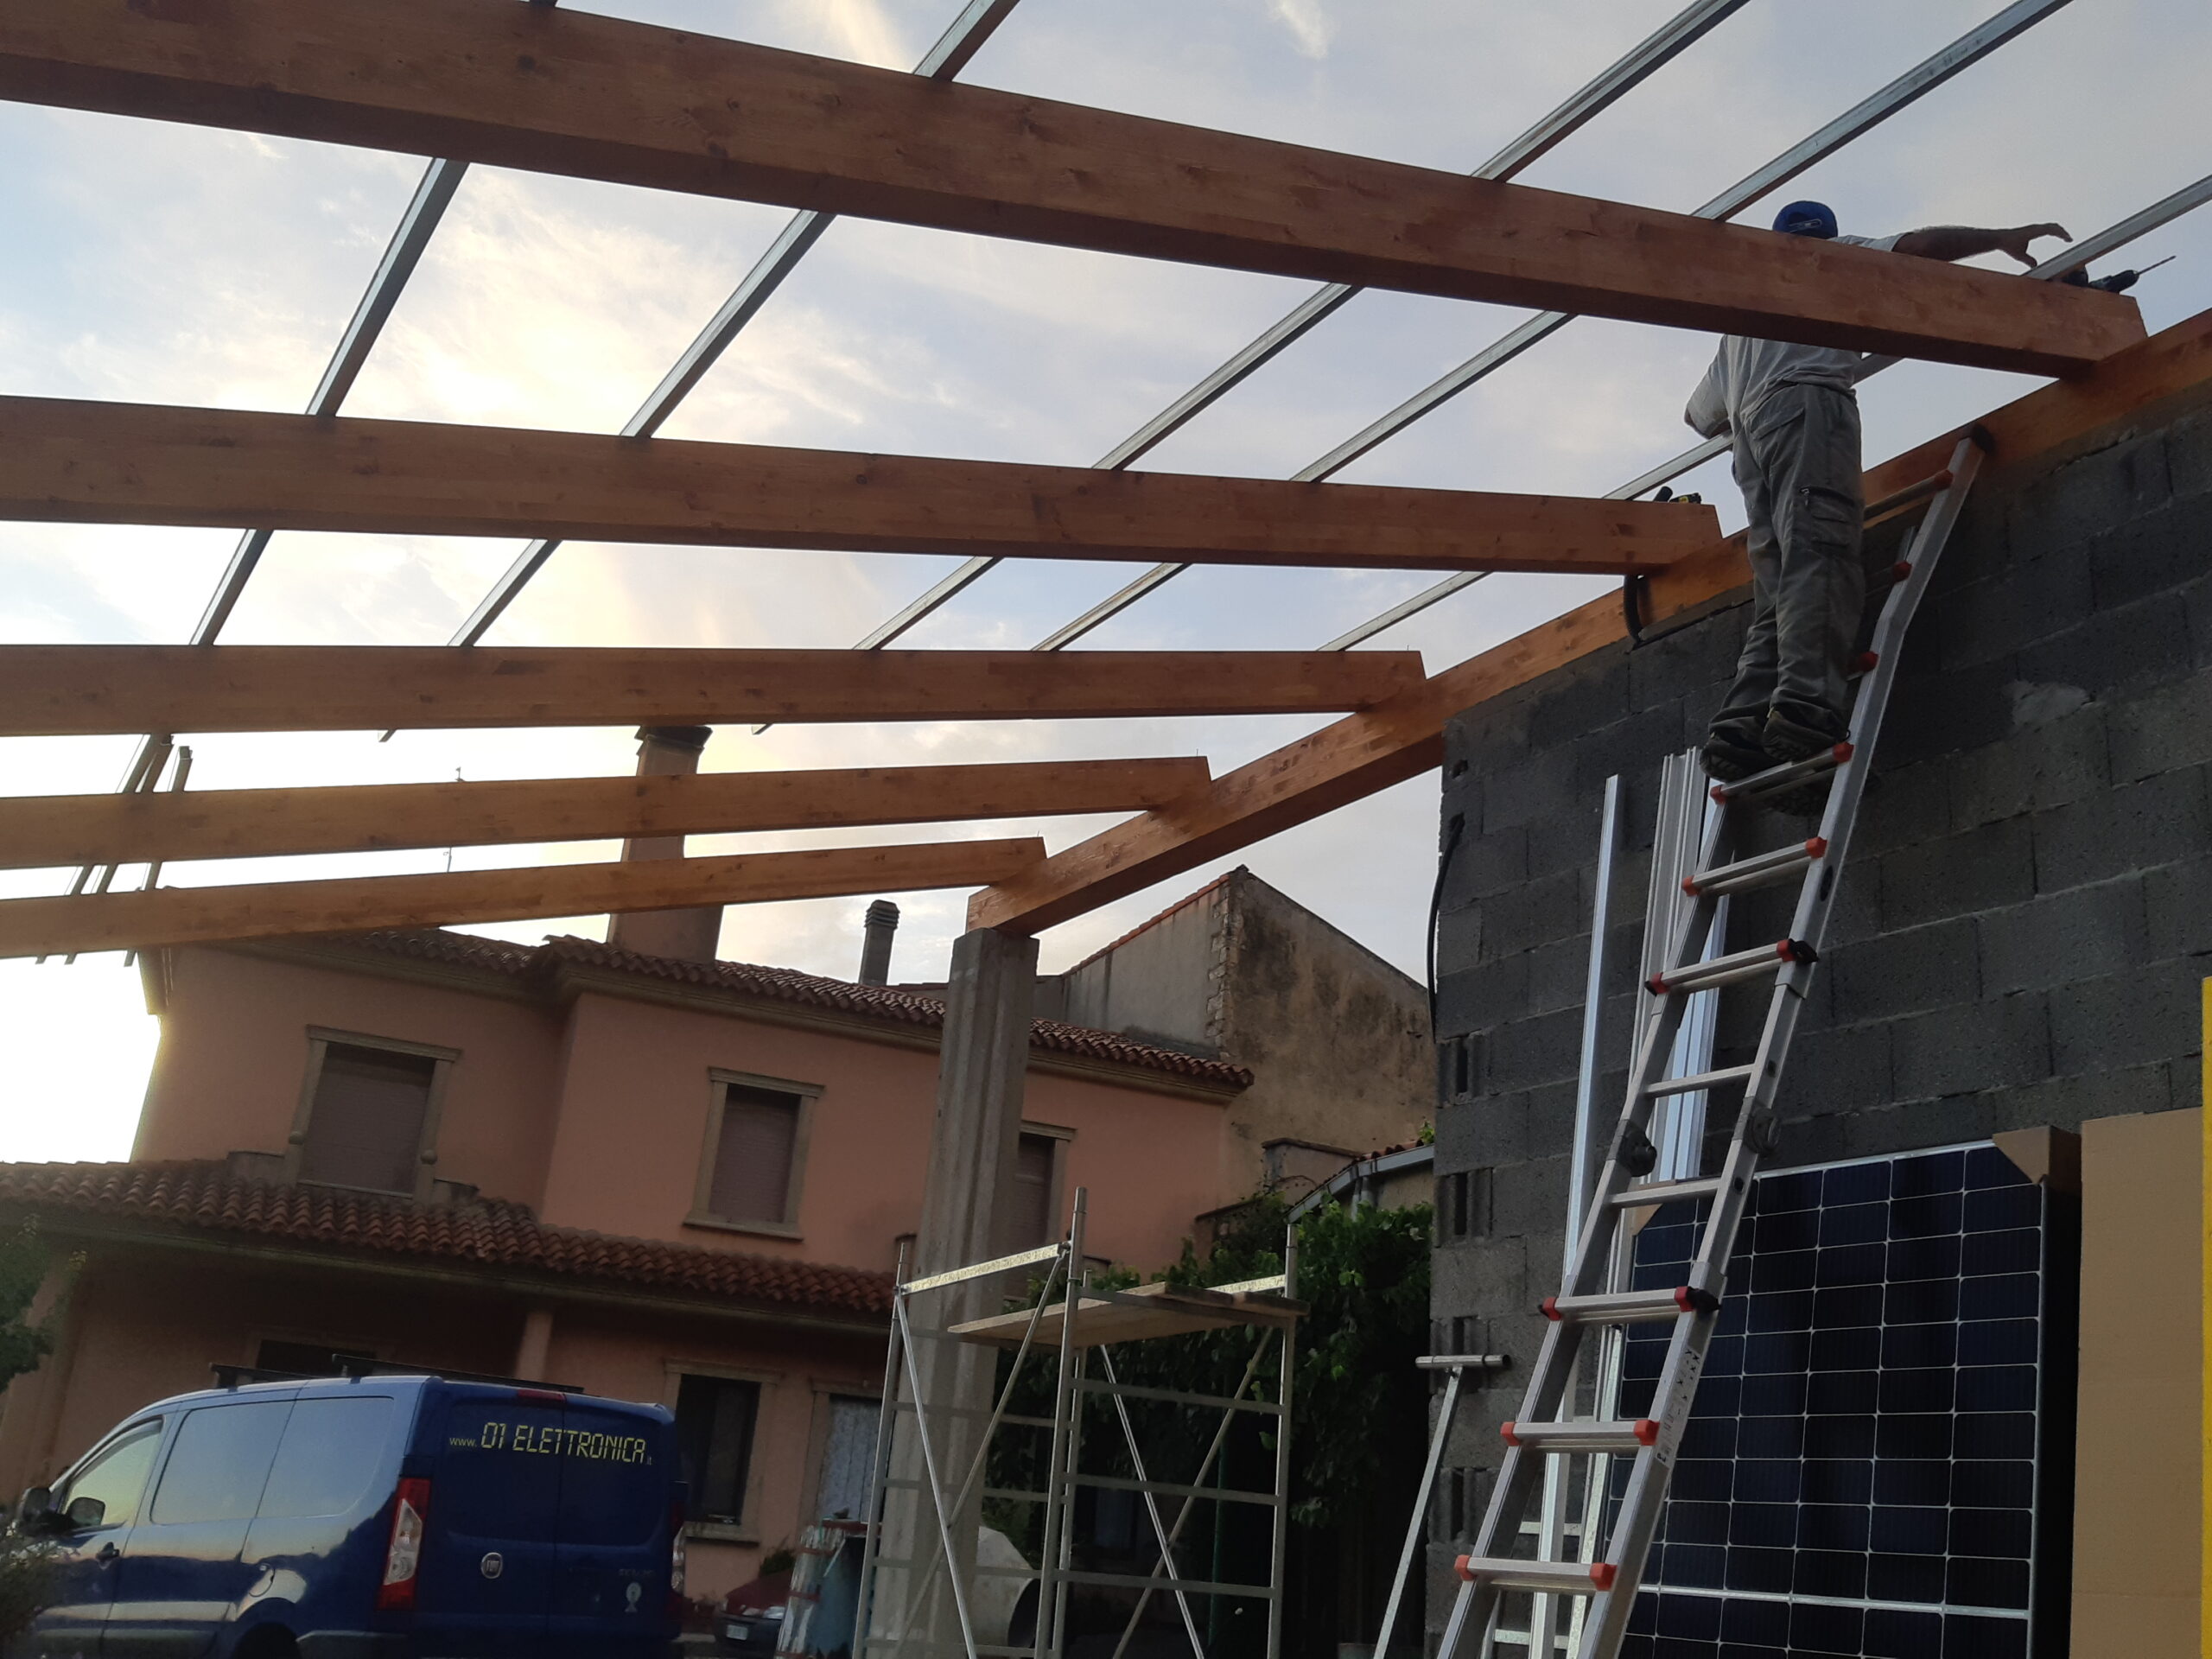 Predisposizione su pensilina pannelli fotovoltaici SolarFabrike 10KW a Nurallao - Cagliari